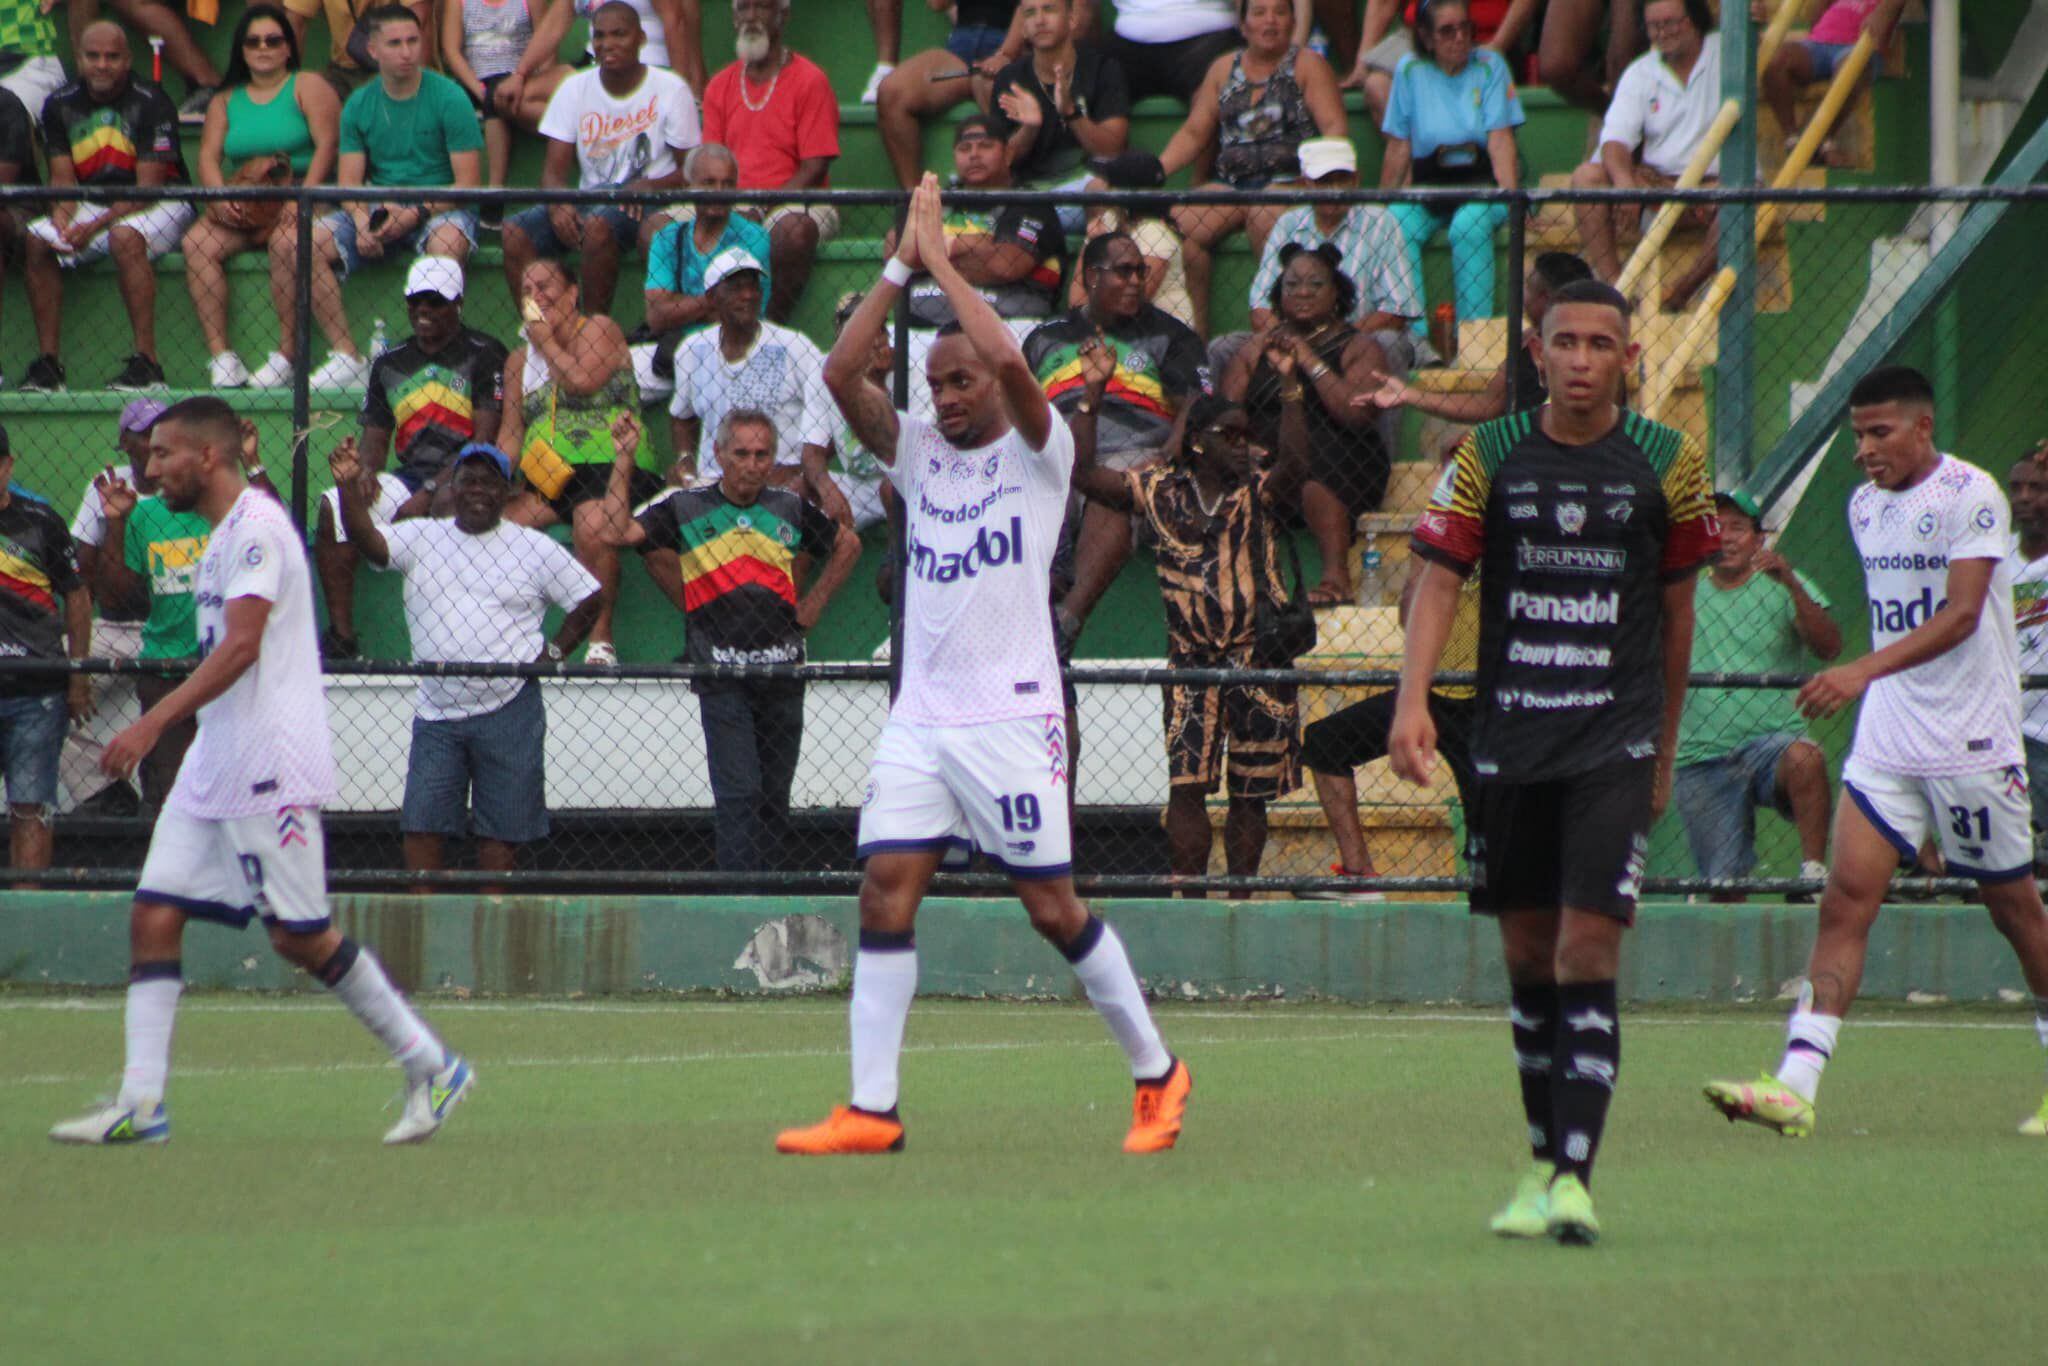 Lemark Hernández anotó el segundo tanto de Guadalupe contra Limón Black Star, un impresionante gol desde el centro del campo. (Foto: Facebook de Guadalupe).